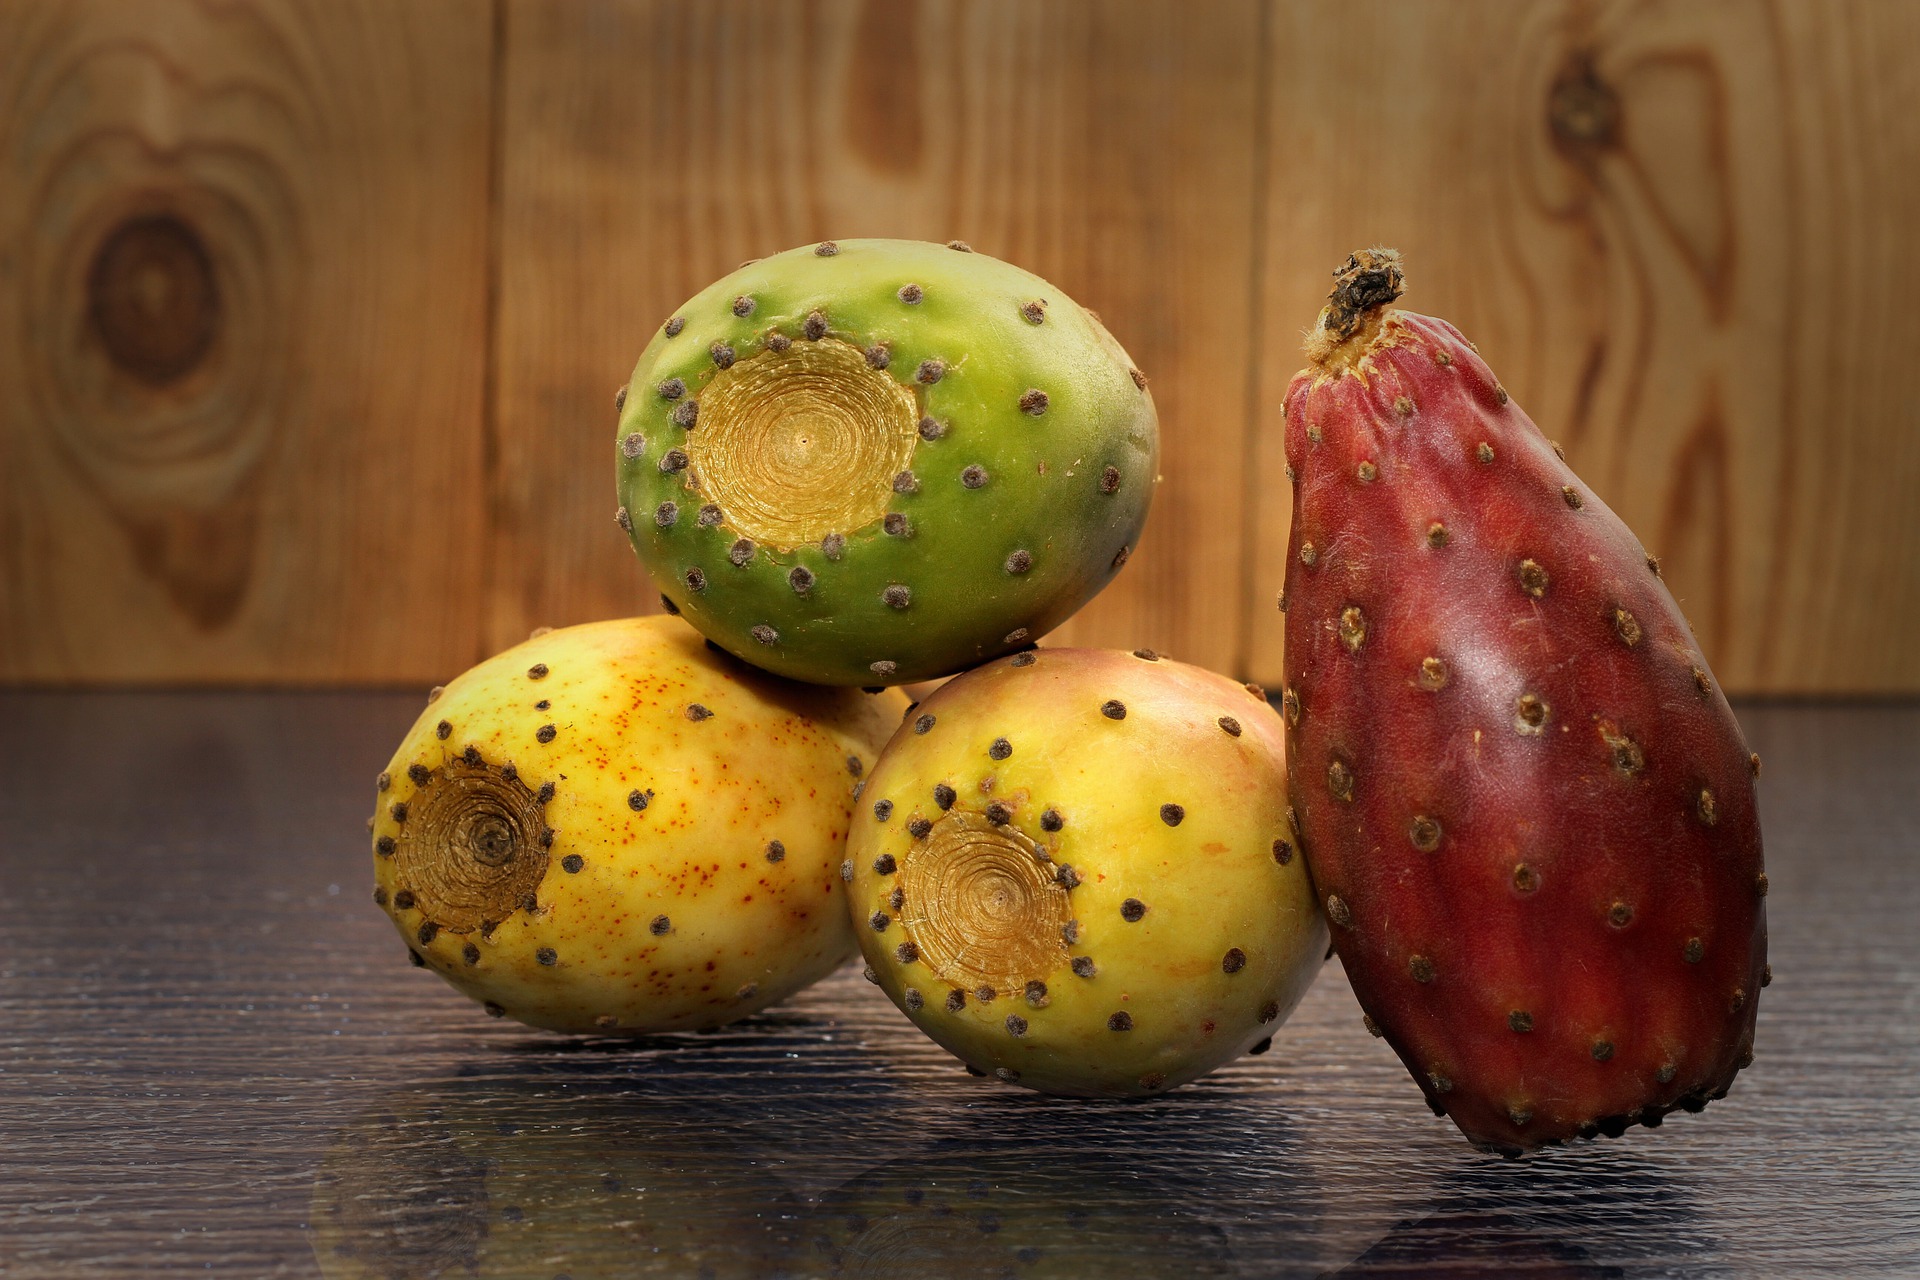 Prickly pear. Prickly Pear фрукт. Опунция плоды. Плоды кактуса опунция. Туна плод кактуса.